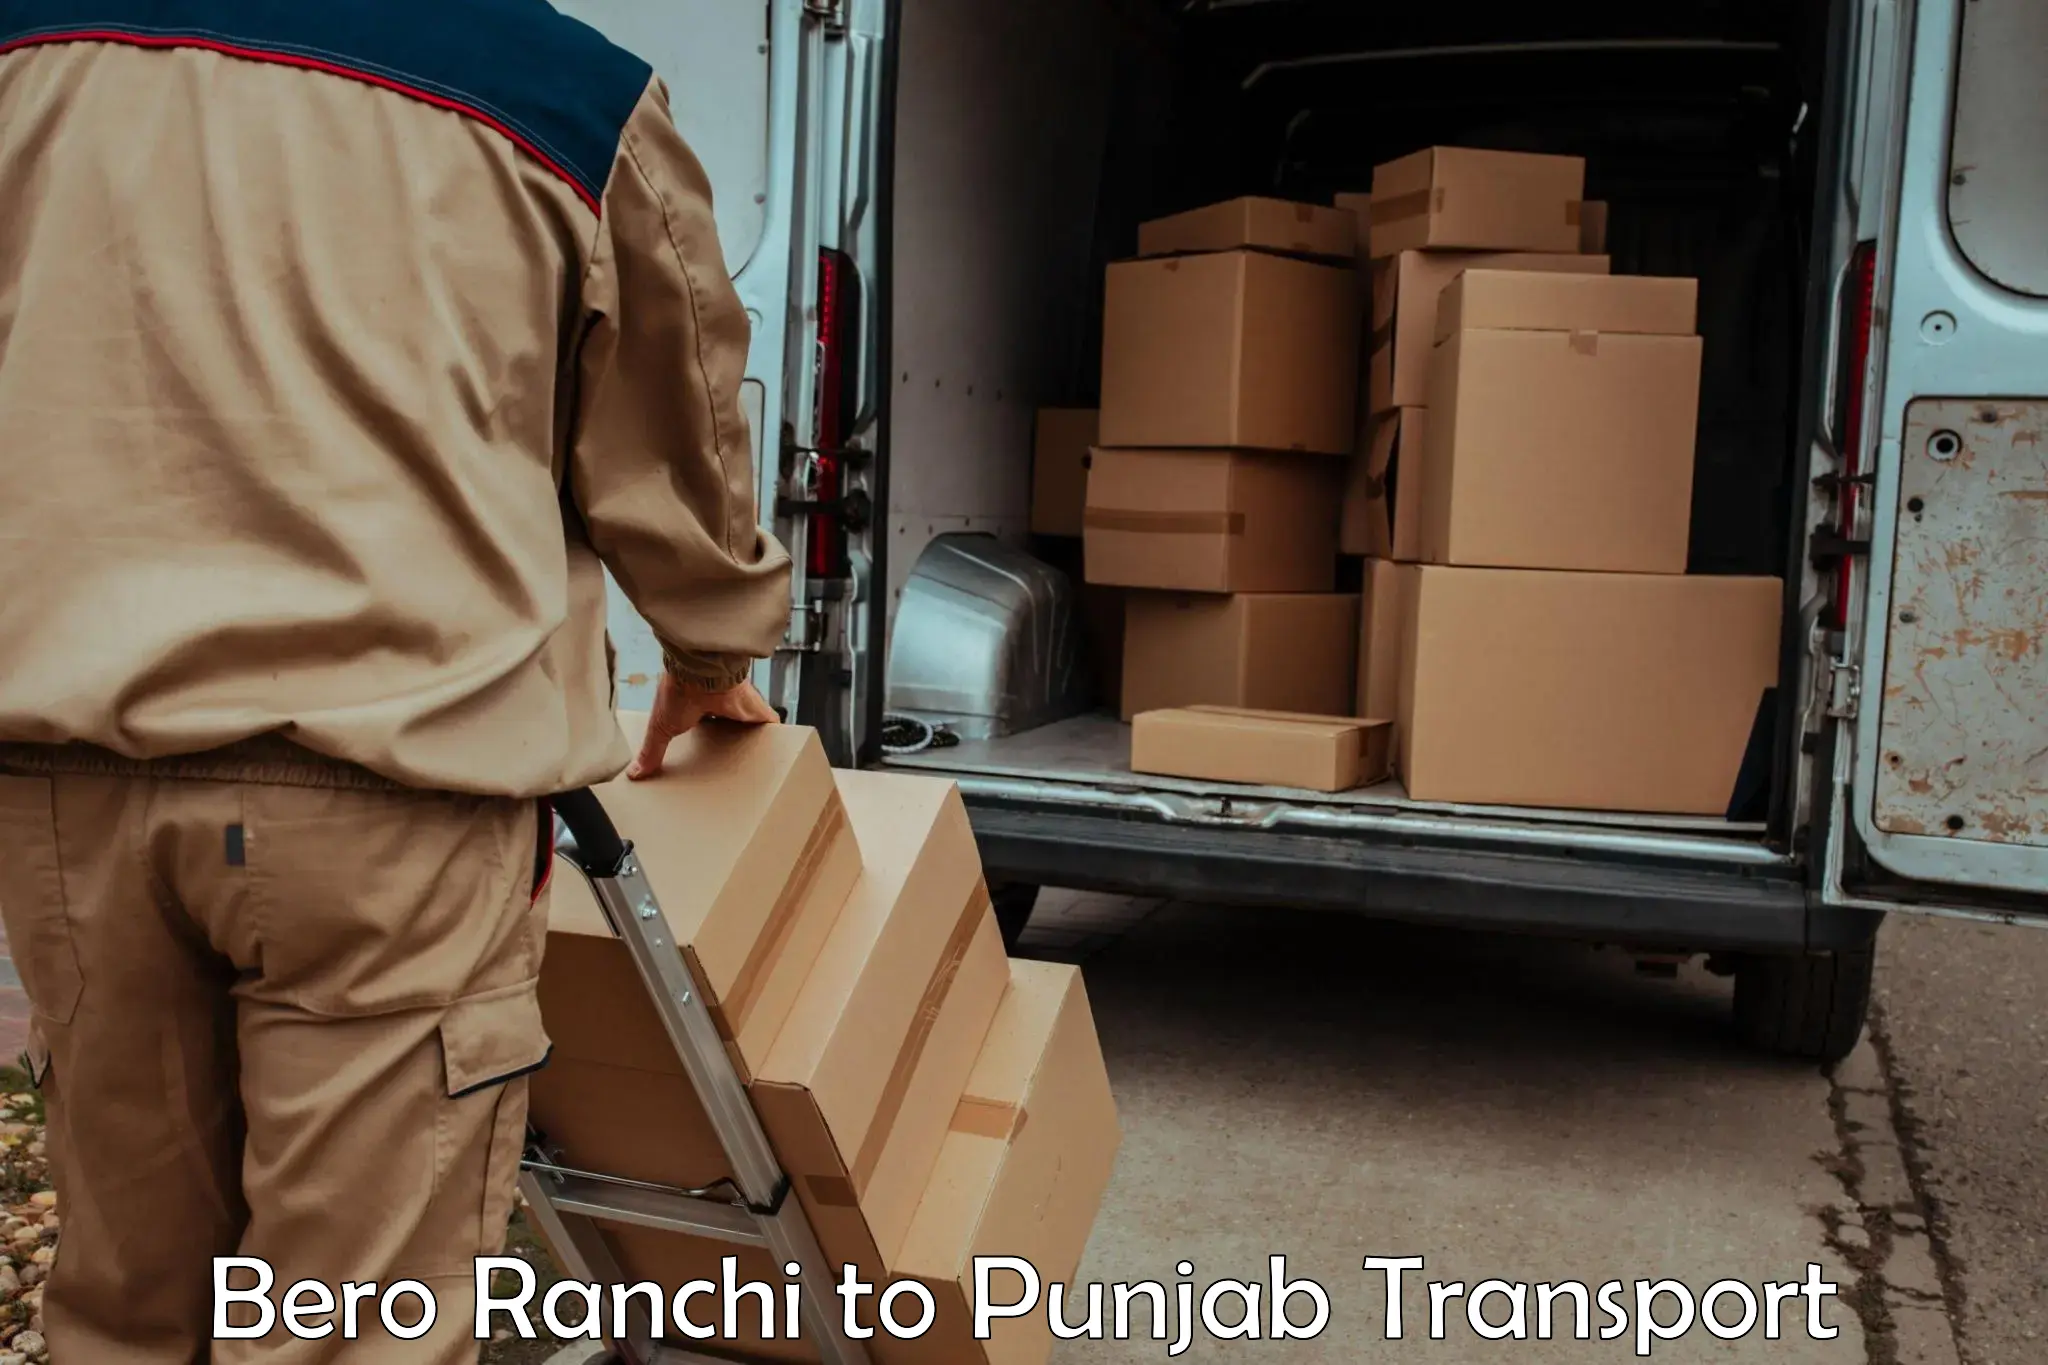 Goods delivery service Bero Ranchi to Ludhiana